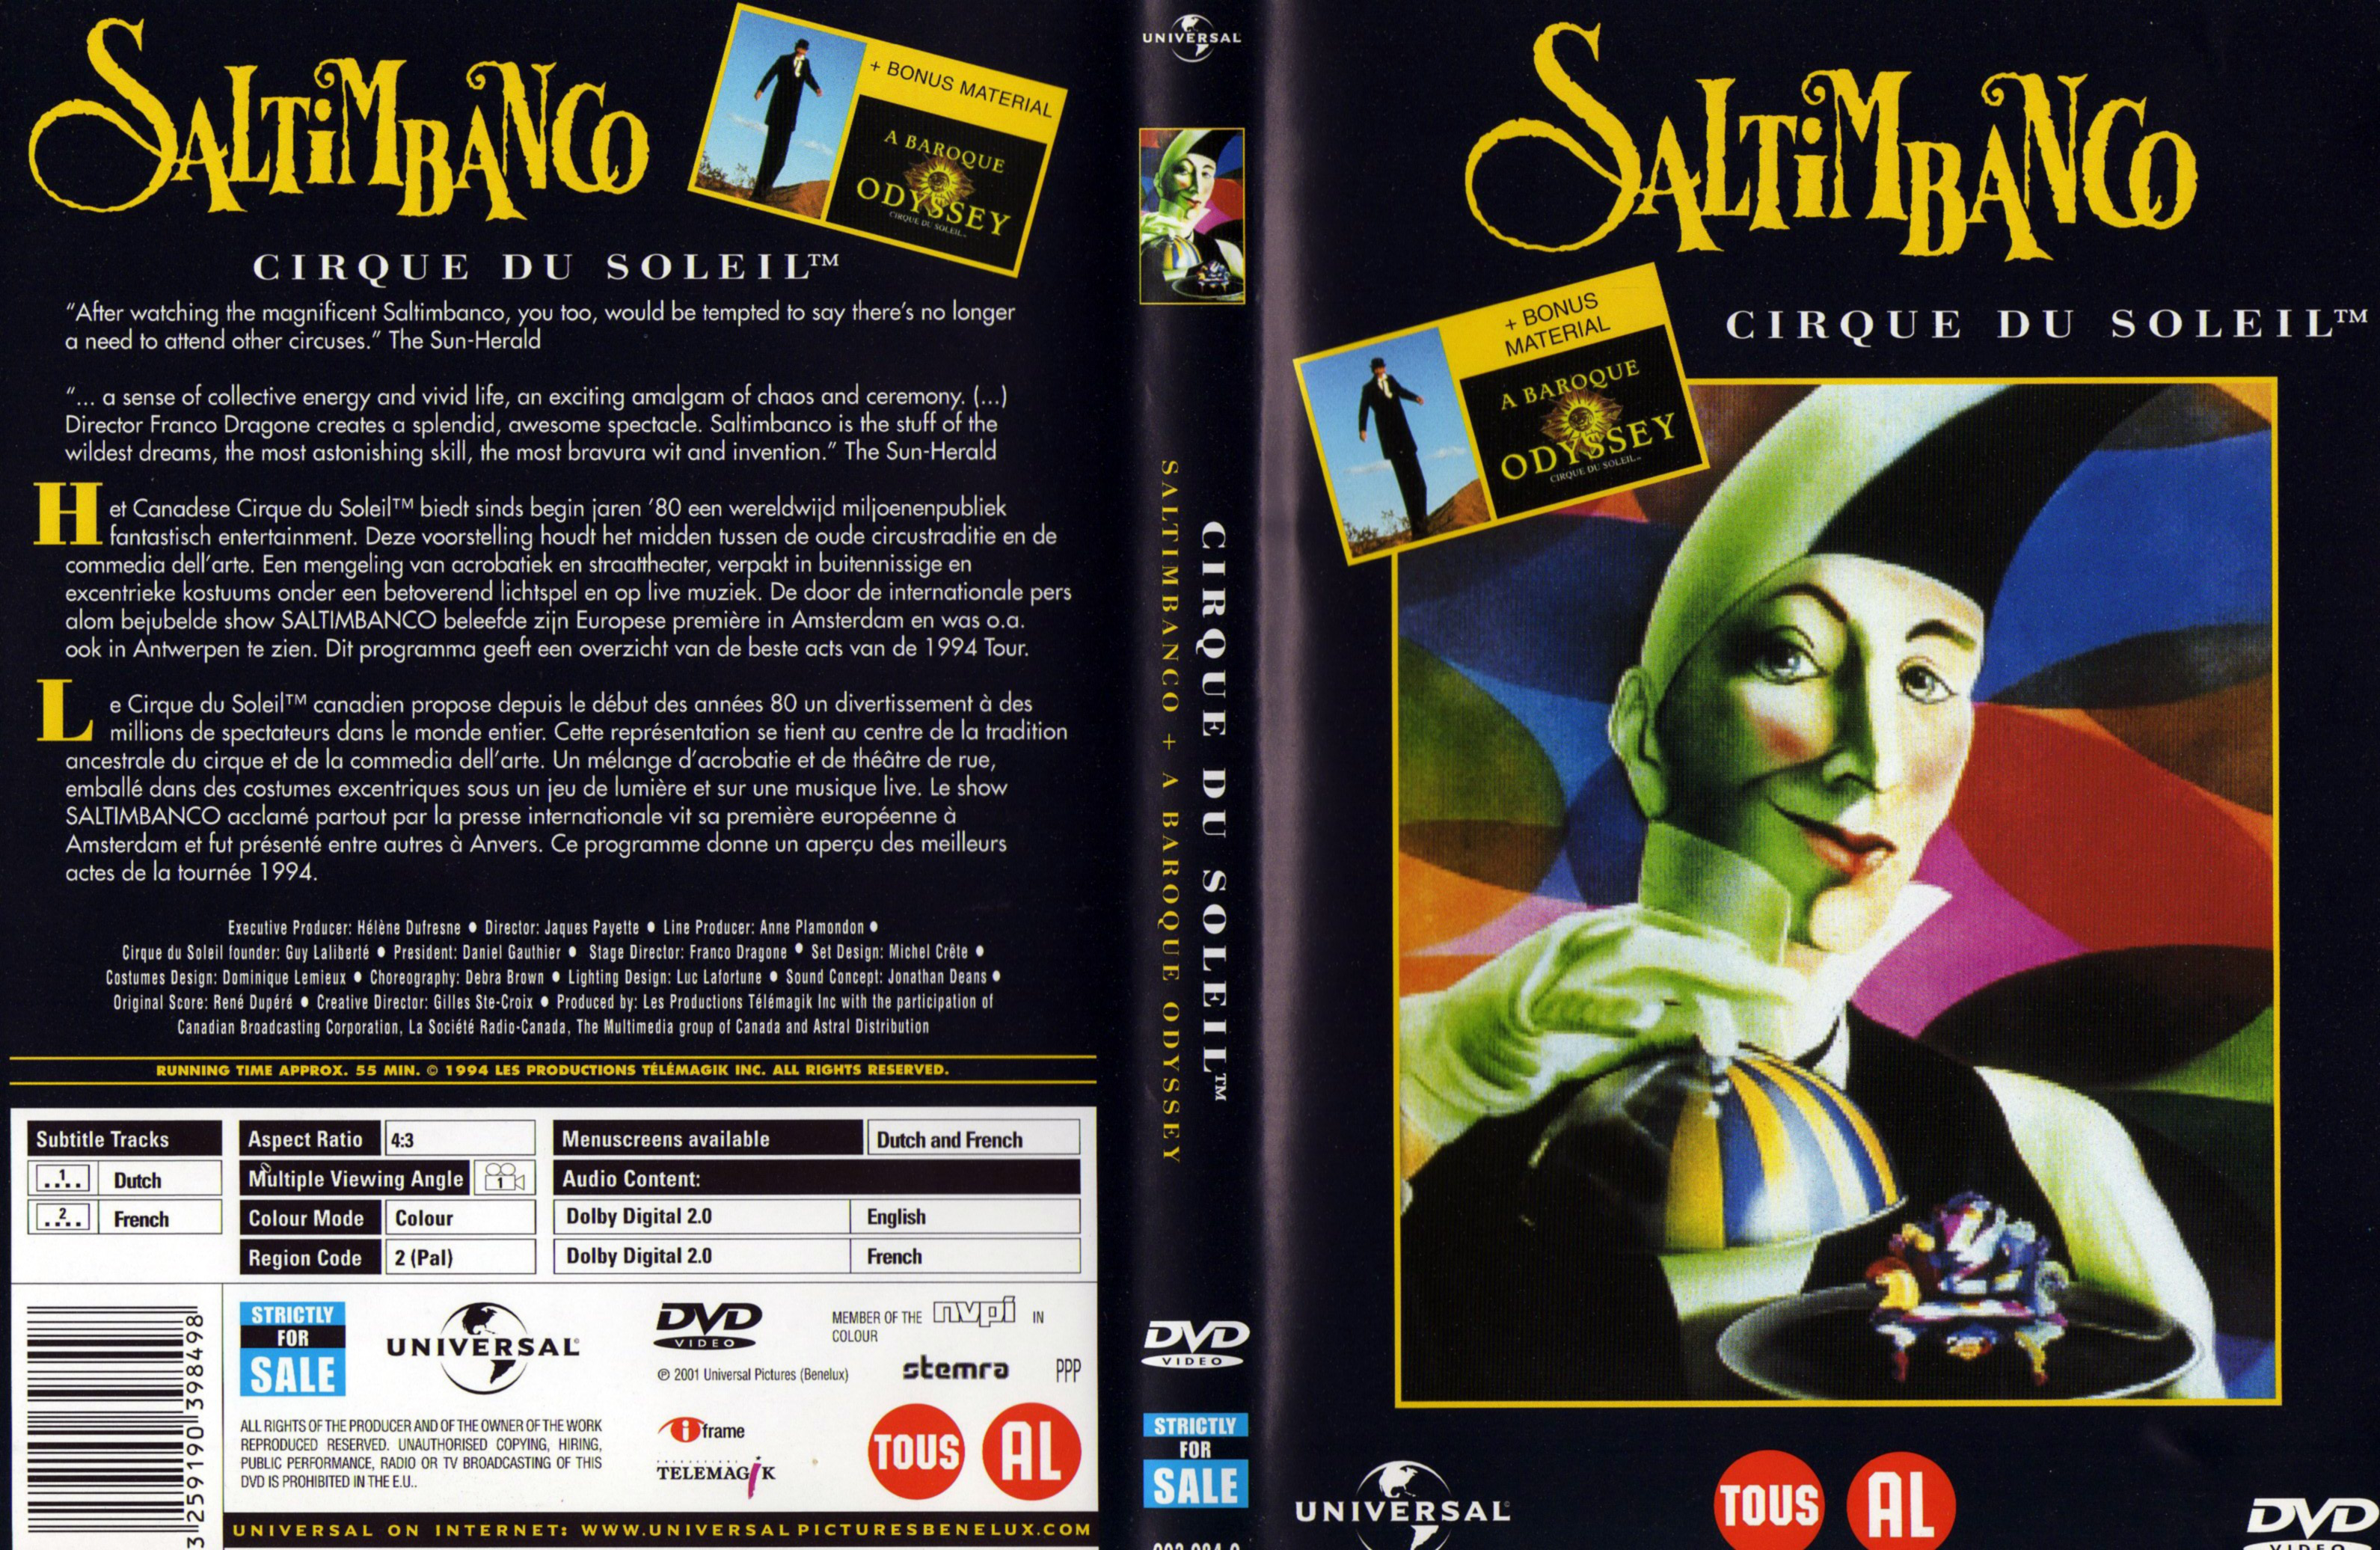 Jaquette DVD Saltimbanco Cirque du soleil